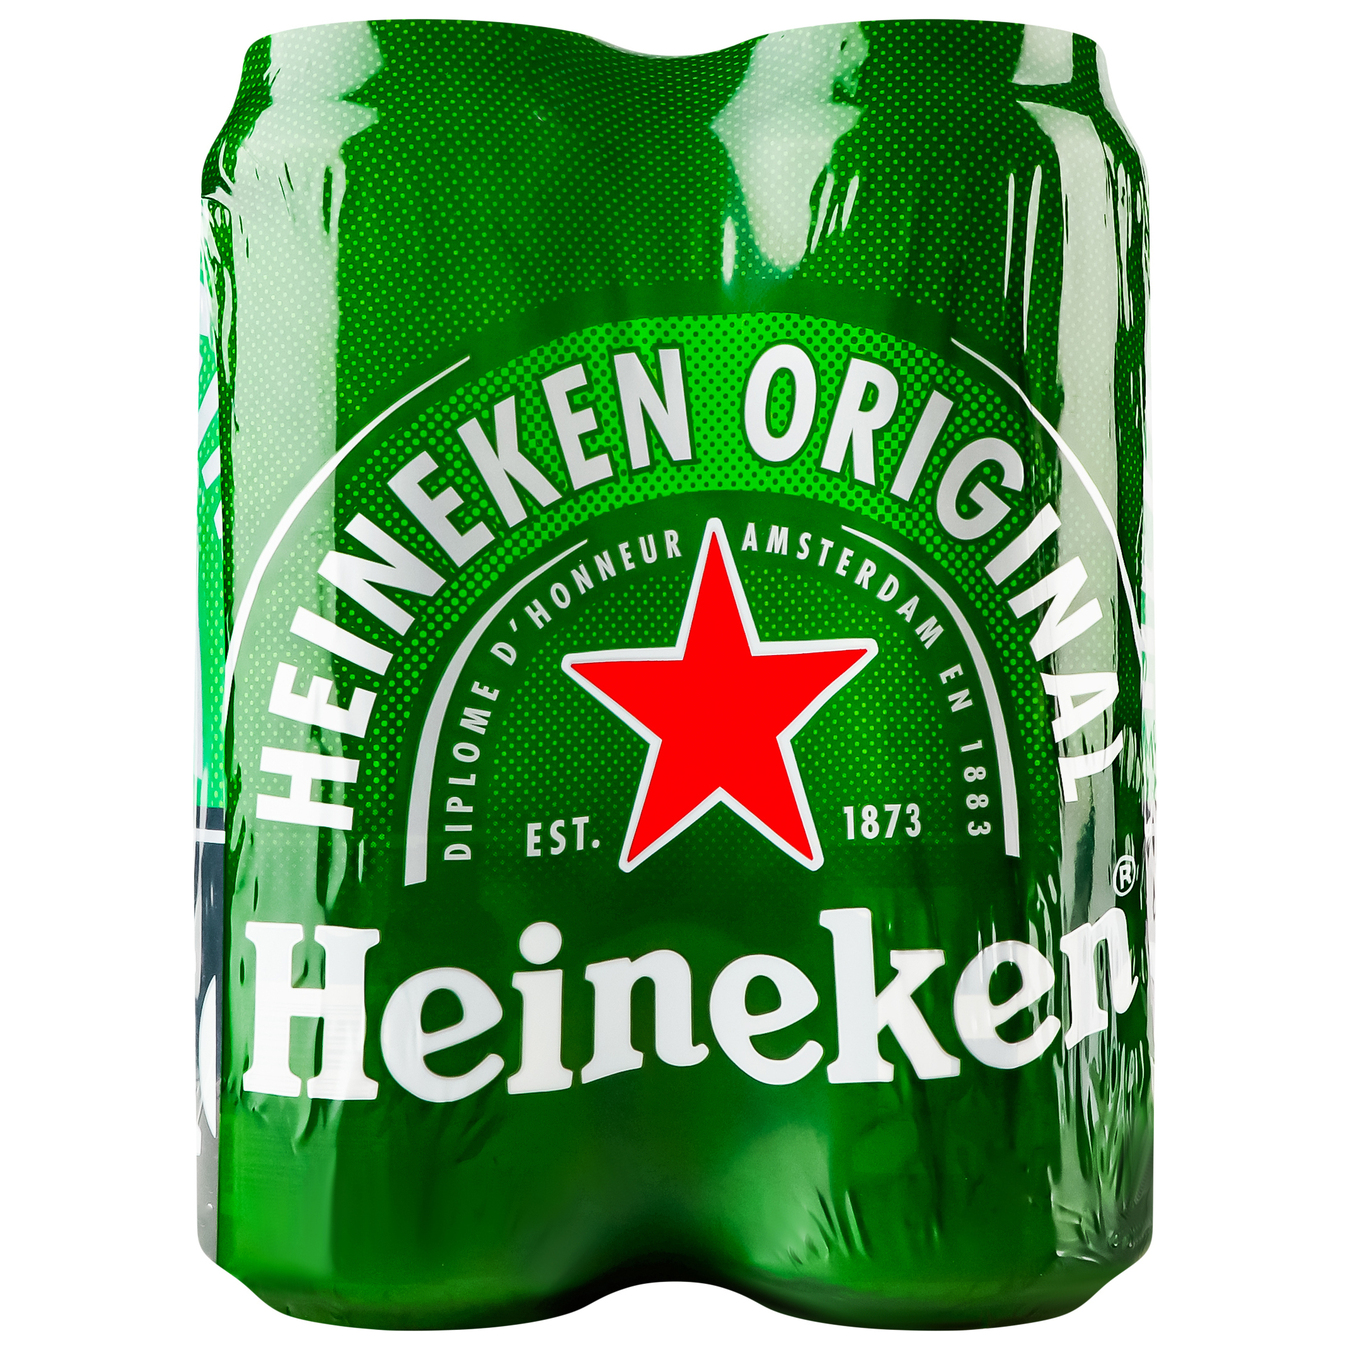 Пиво Heineken светлое фильтрованное пастеризованное 5% 4*500мл/уп